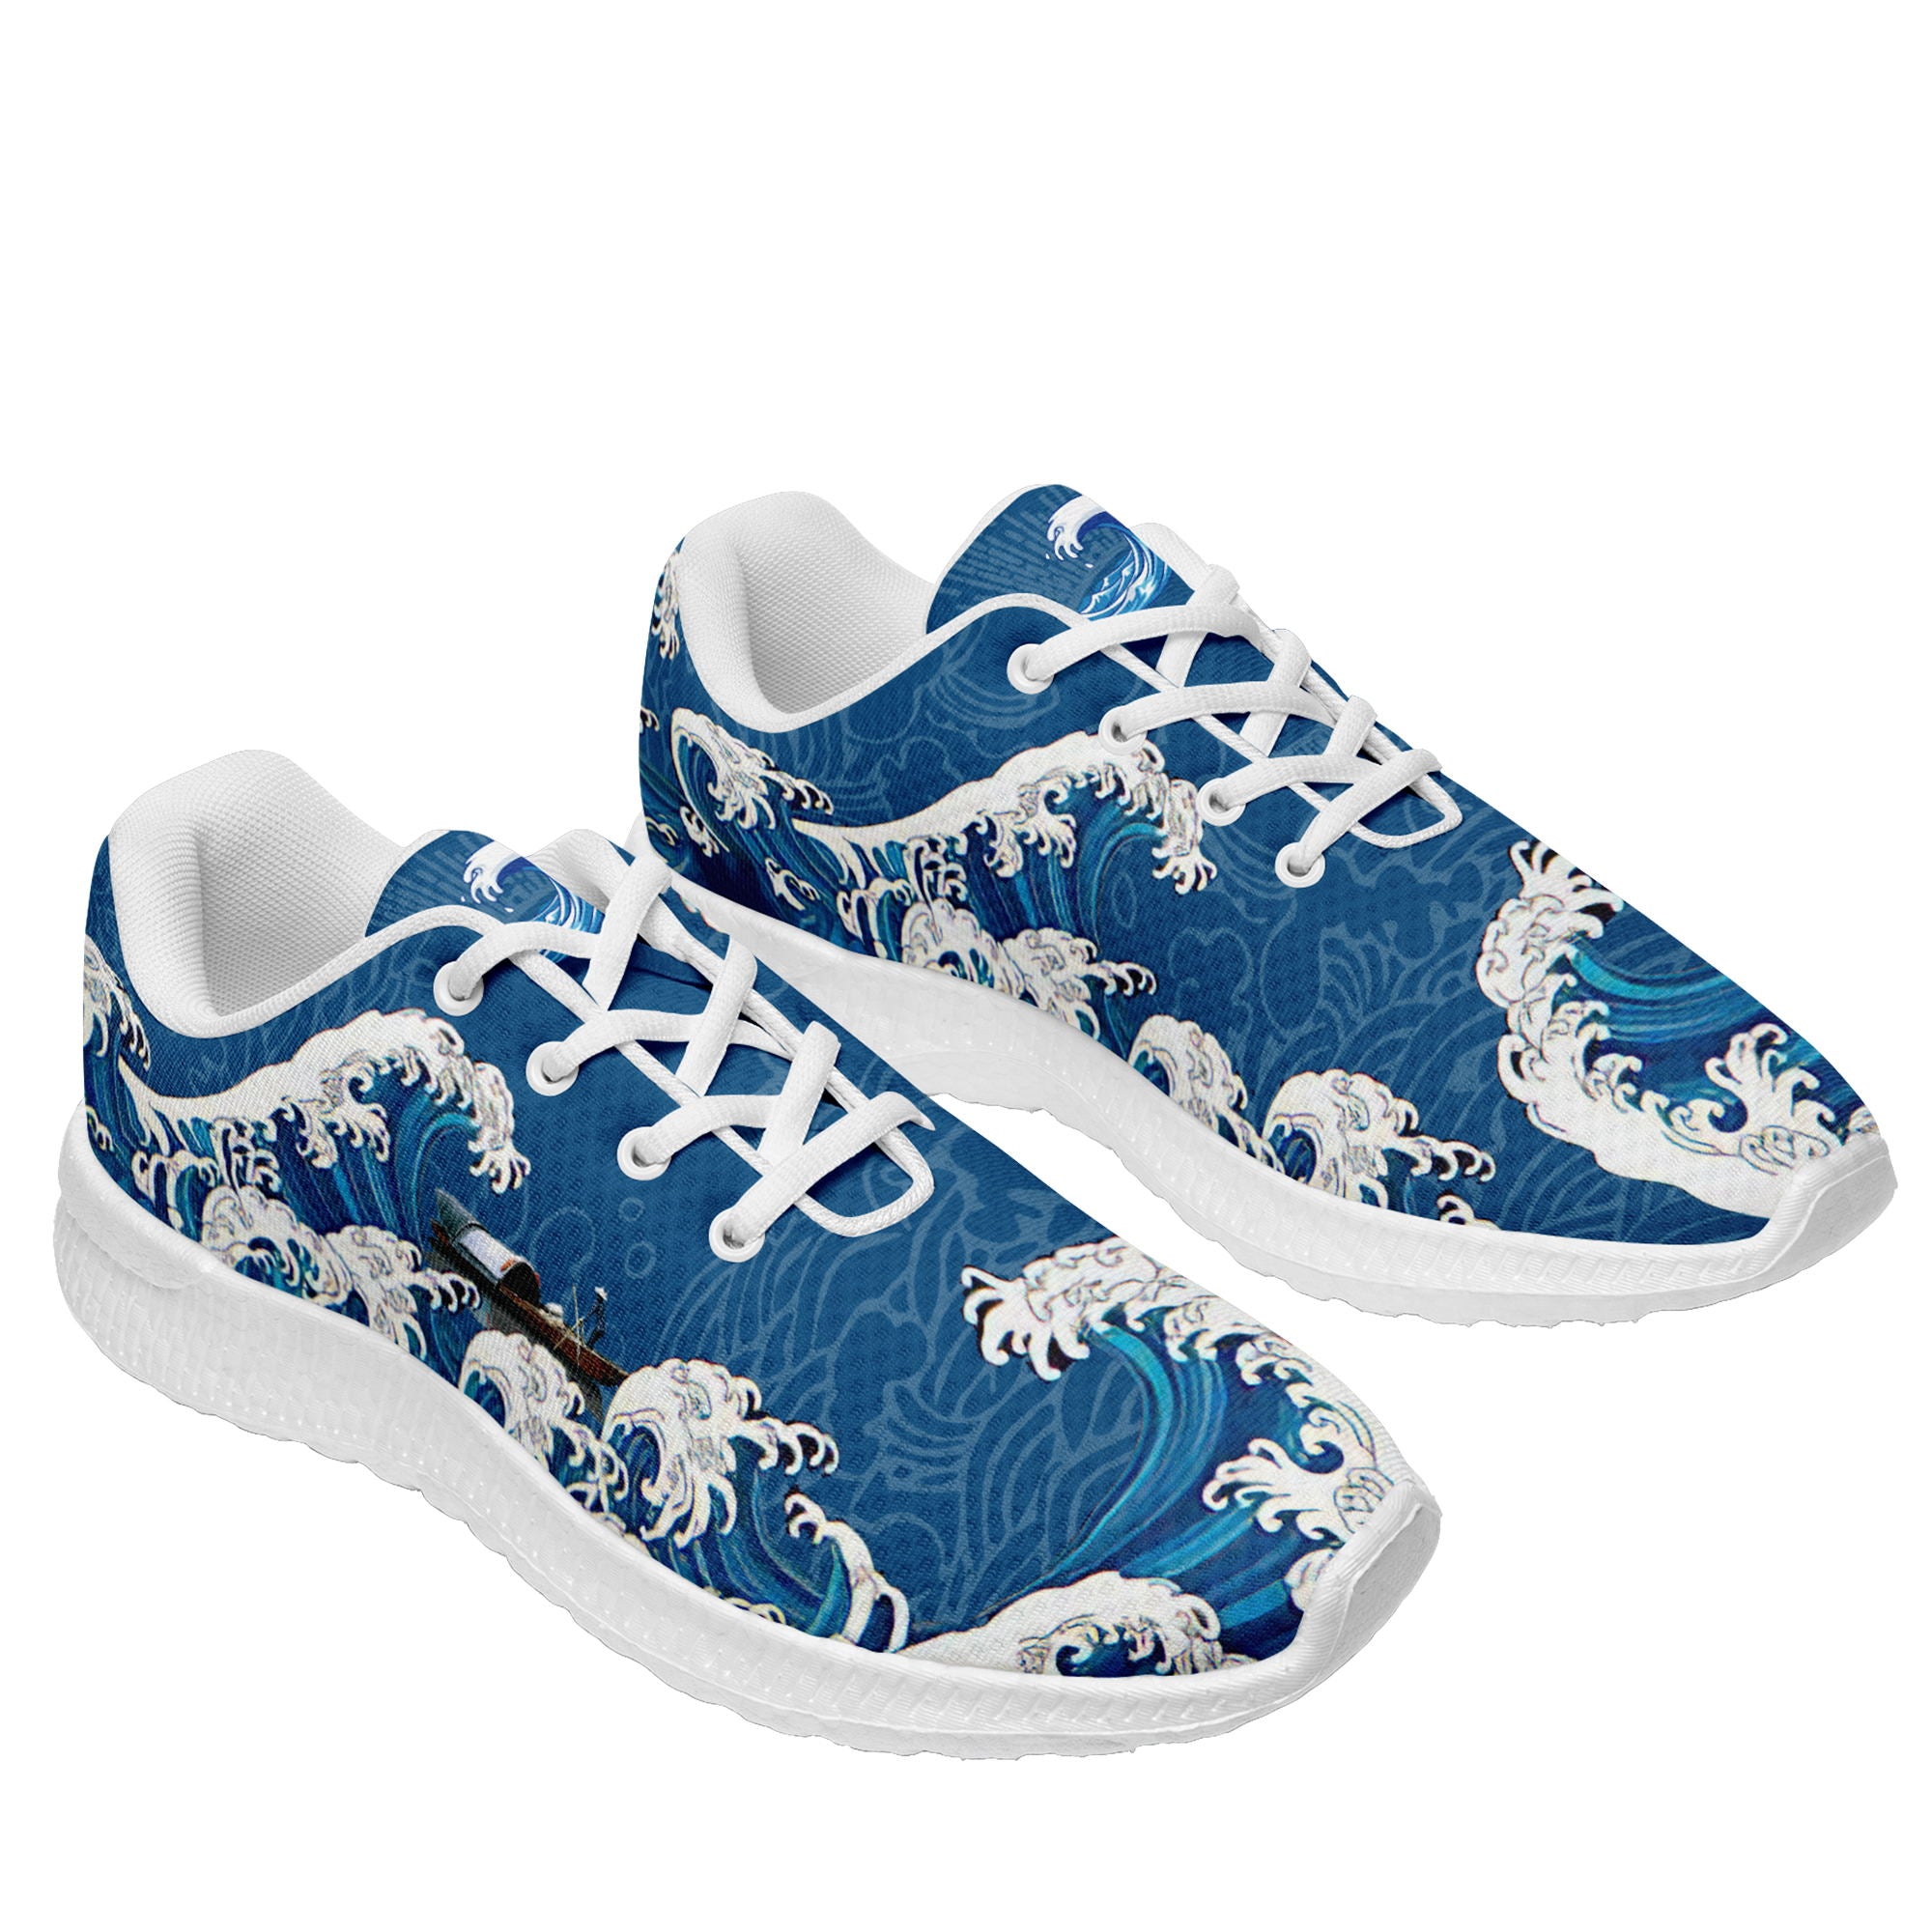 柔性定制个性化打印设计跑鞋时尚中国莆田妈祖特色主题运动鞋蓝色BLD2-3